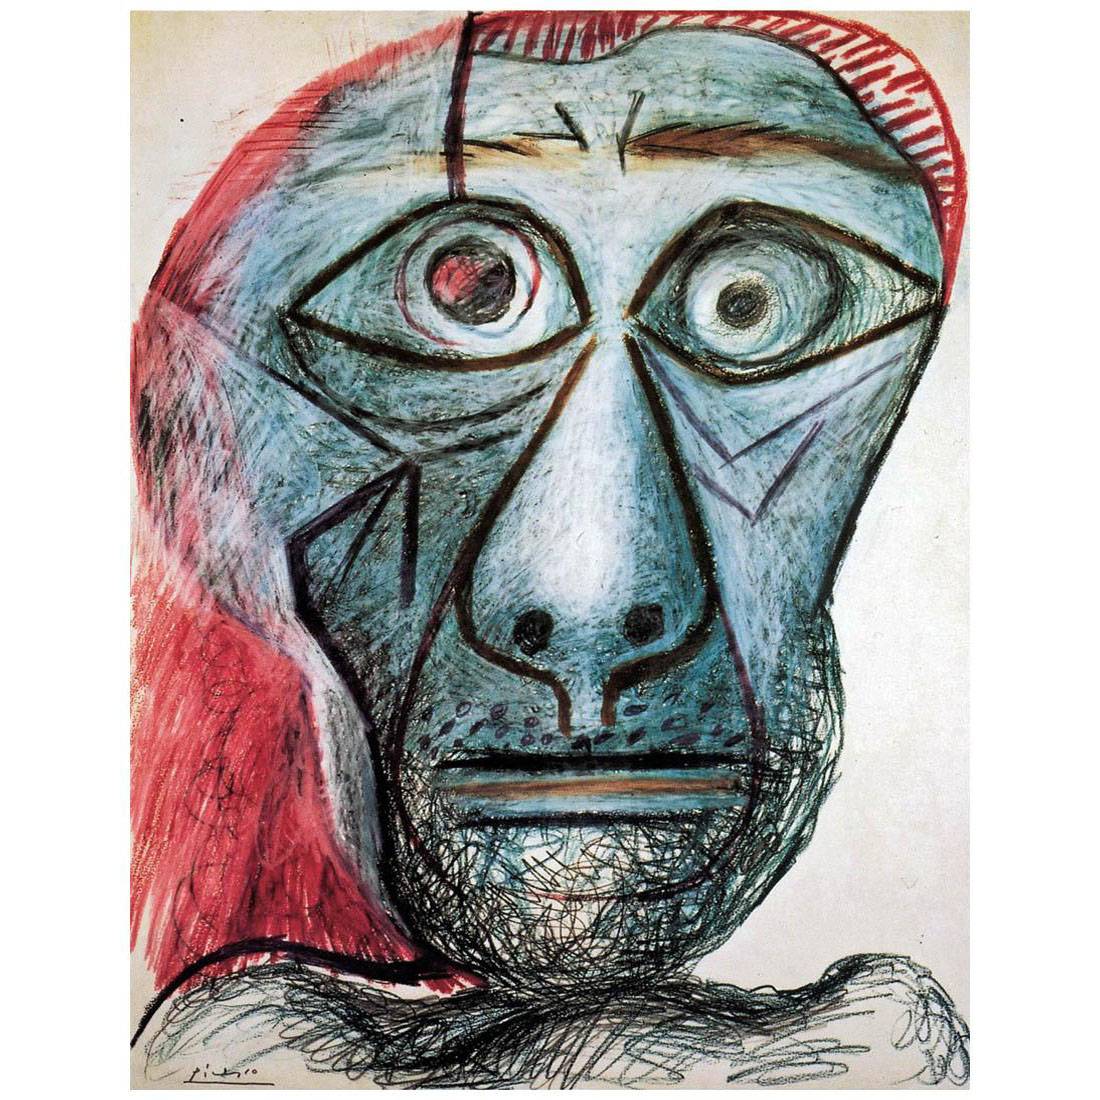 Pablo Picasso. Self-portrait Facing Death. 1972. Fuji Gallery, Tokyo